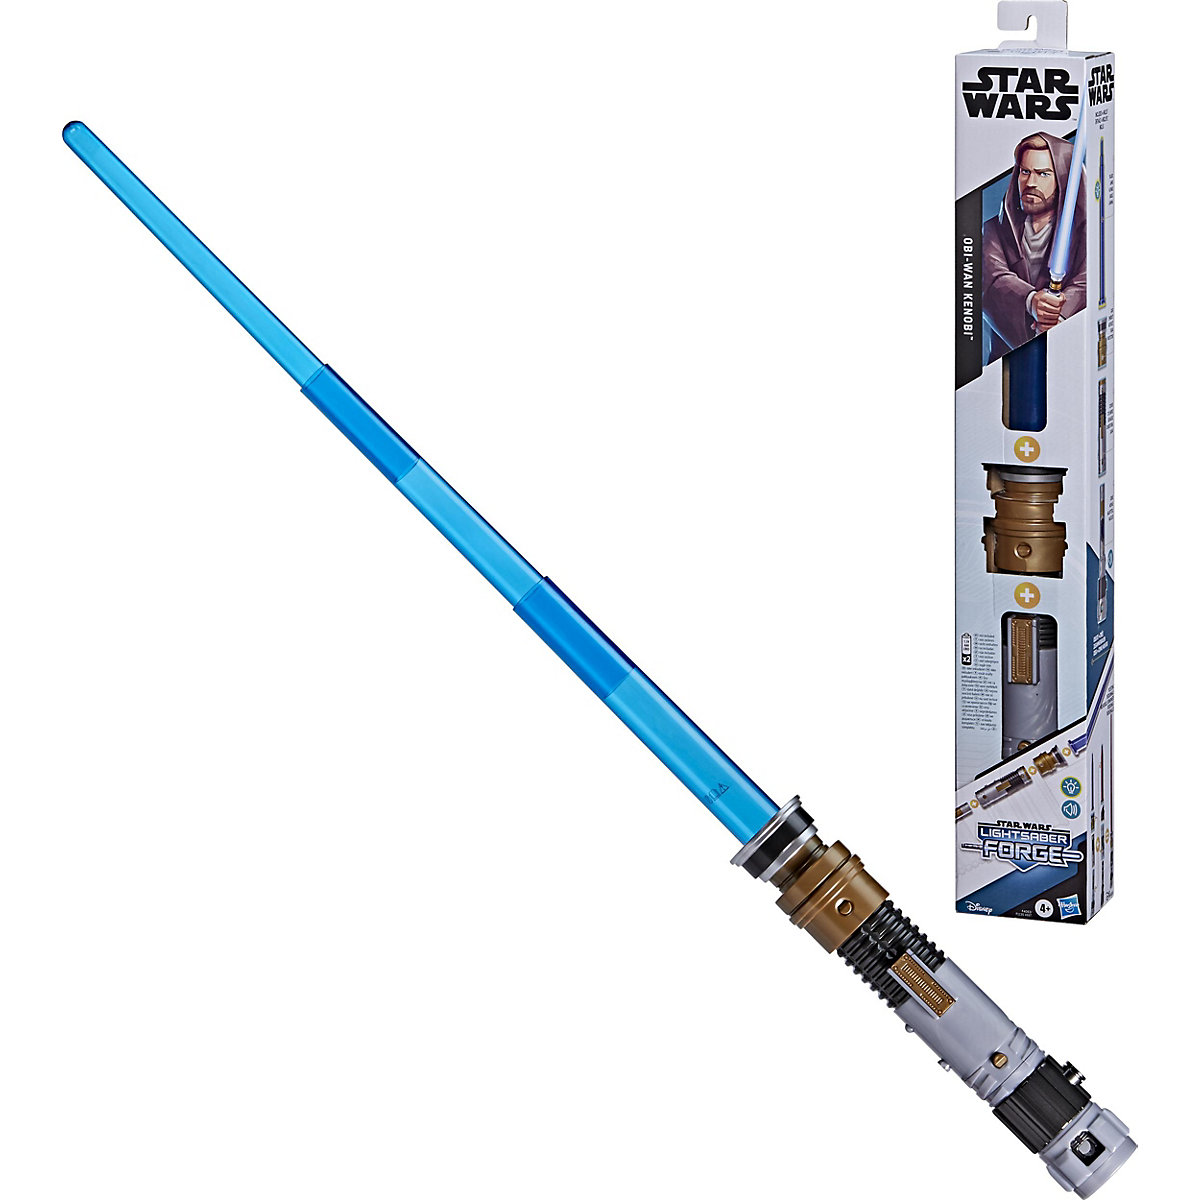 Star Wars Lightsaber Forge Obi-Wan Kenobi elektronisches blaues Lichtschwert